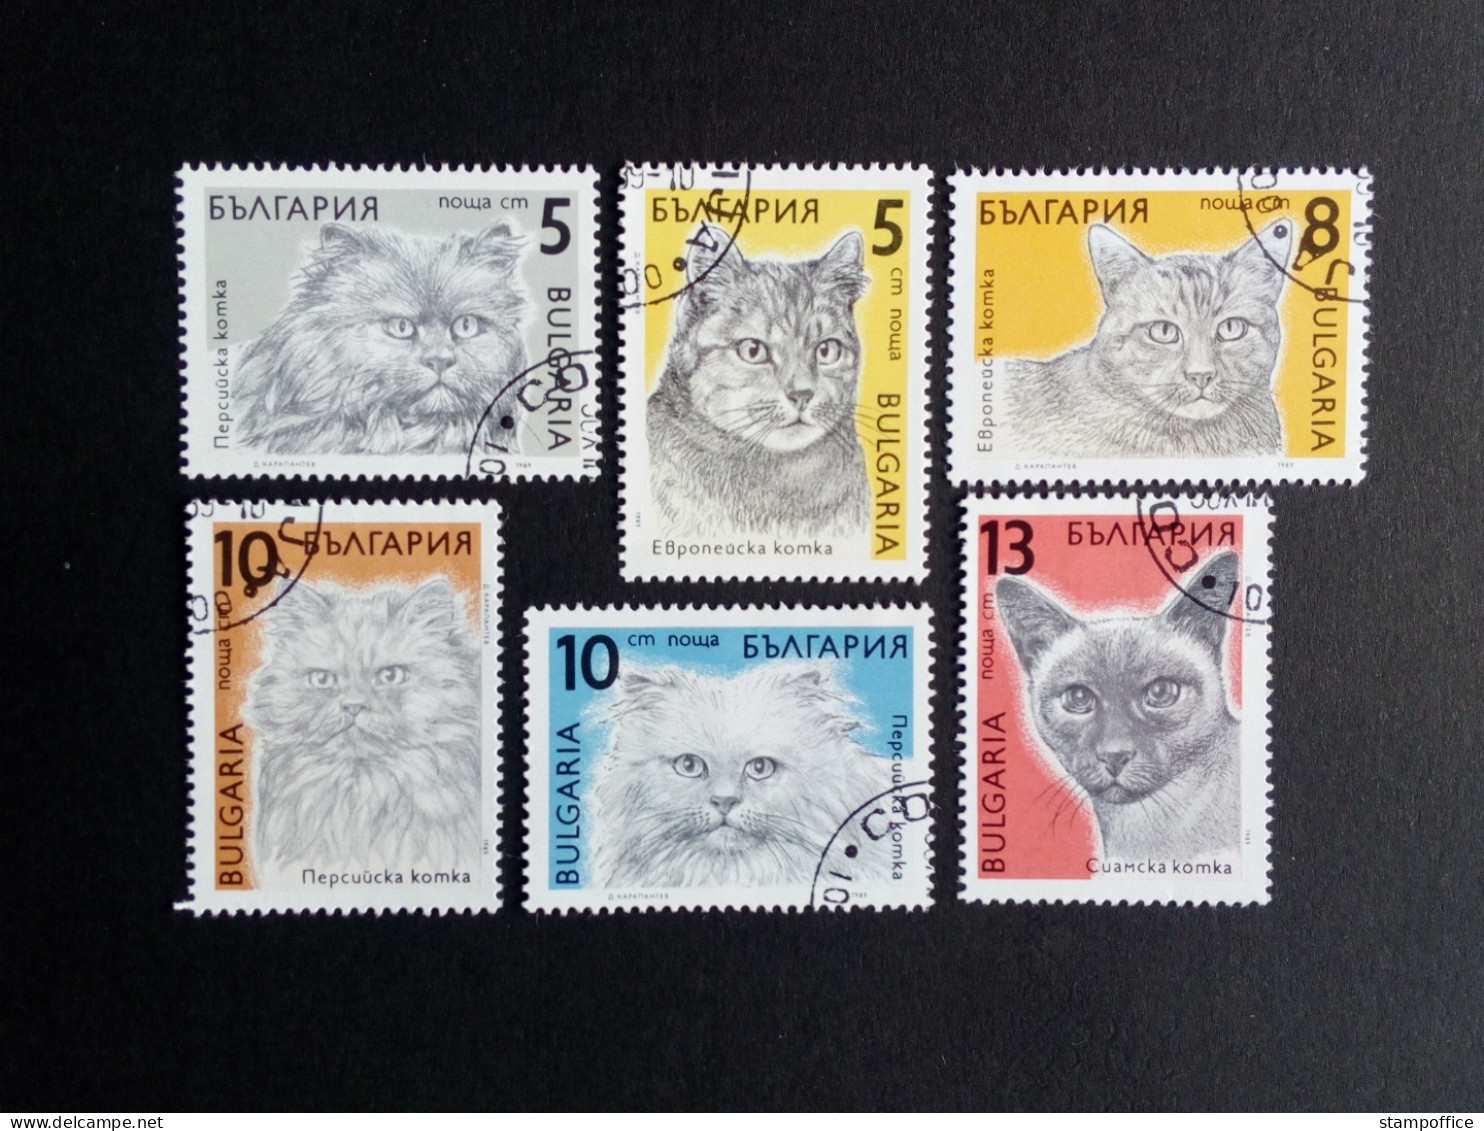 BULGARIEN MI-NR. 3808-3813 GESTEMPELT(USED) KATZEN(CATS) SIAM PERSER - Chats Domestiques